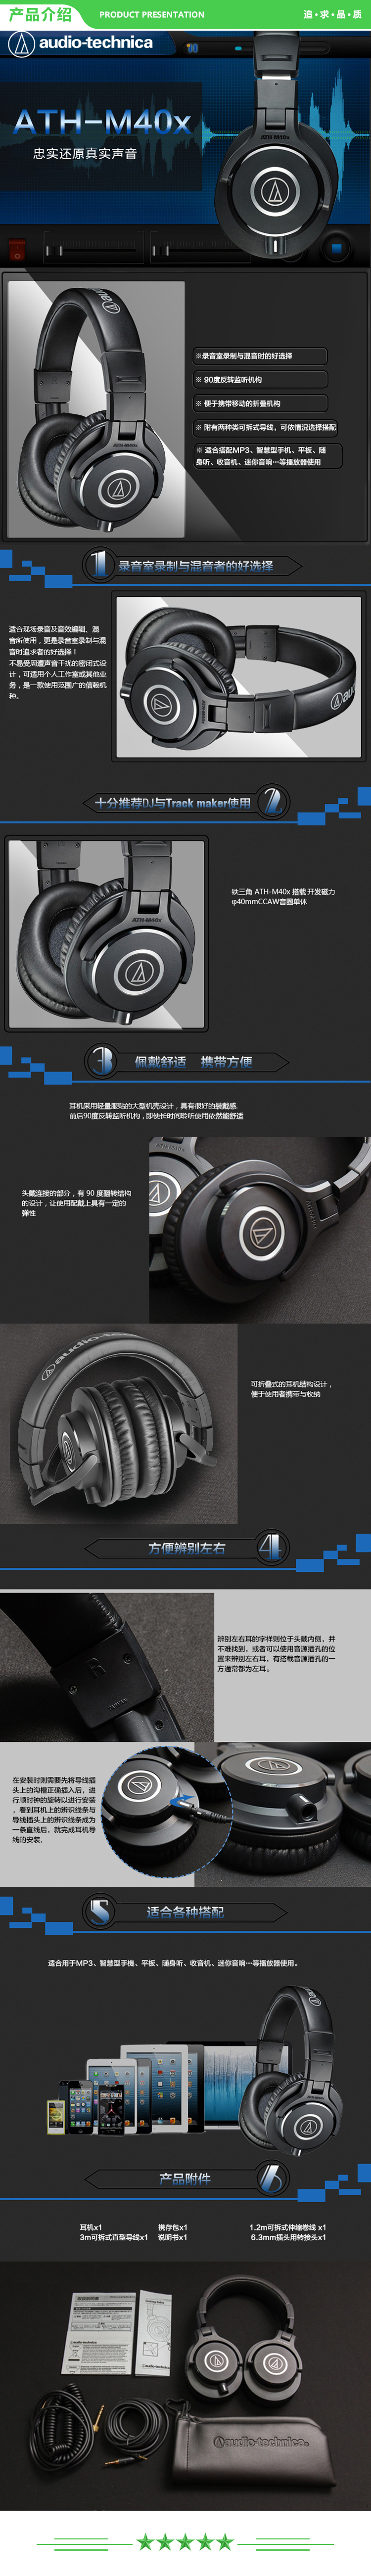 铁三角 Audio-technica ATH-M40x 专业监听头戴式耳机 90度旋转式耳罩单耳监听 .jpg